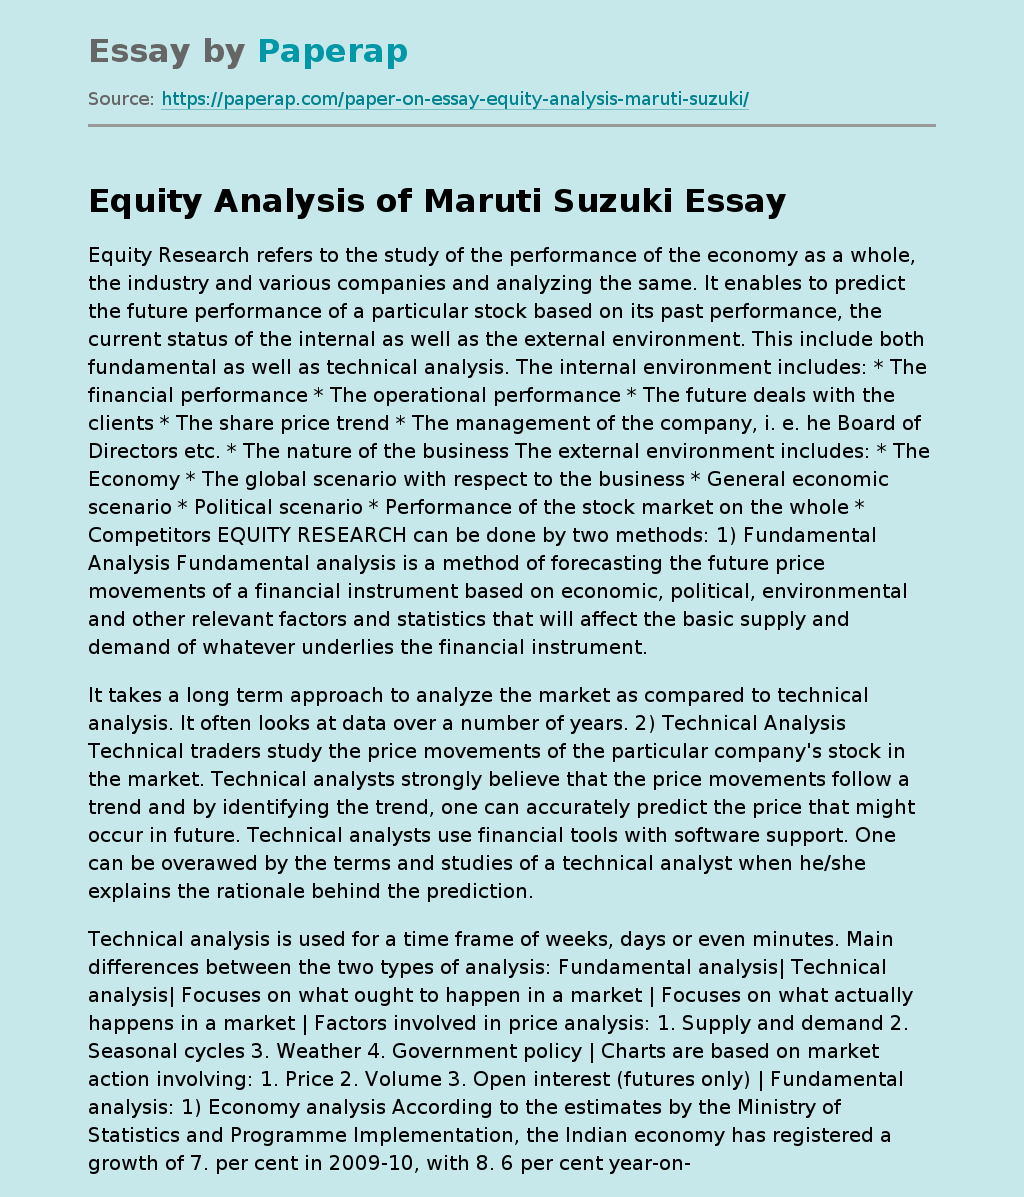 Equity Analysis of Maruti Suzuki